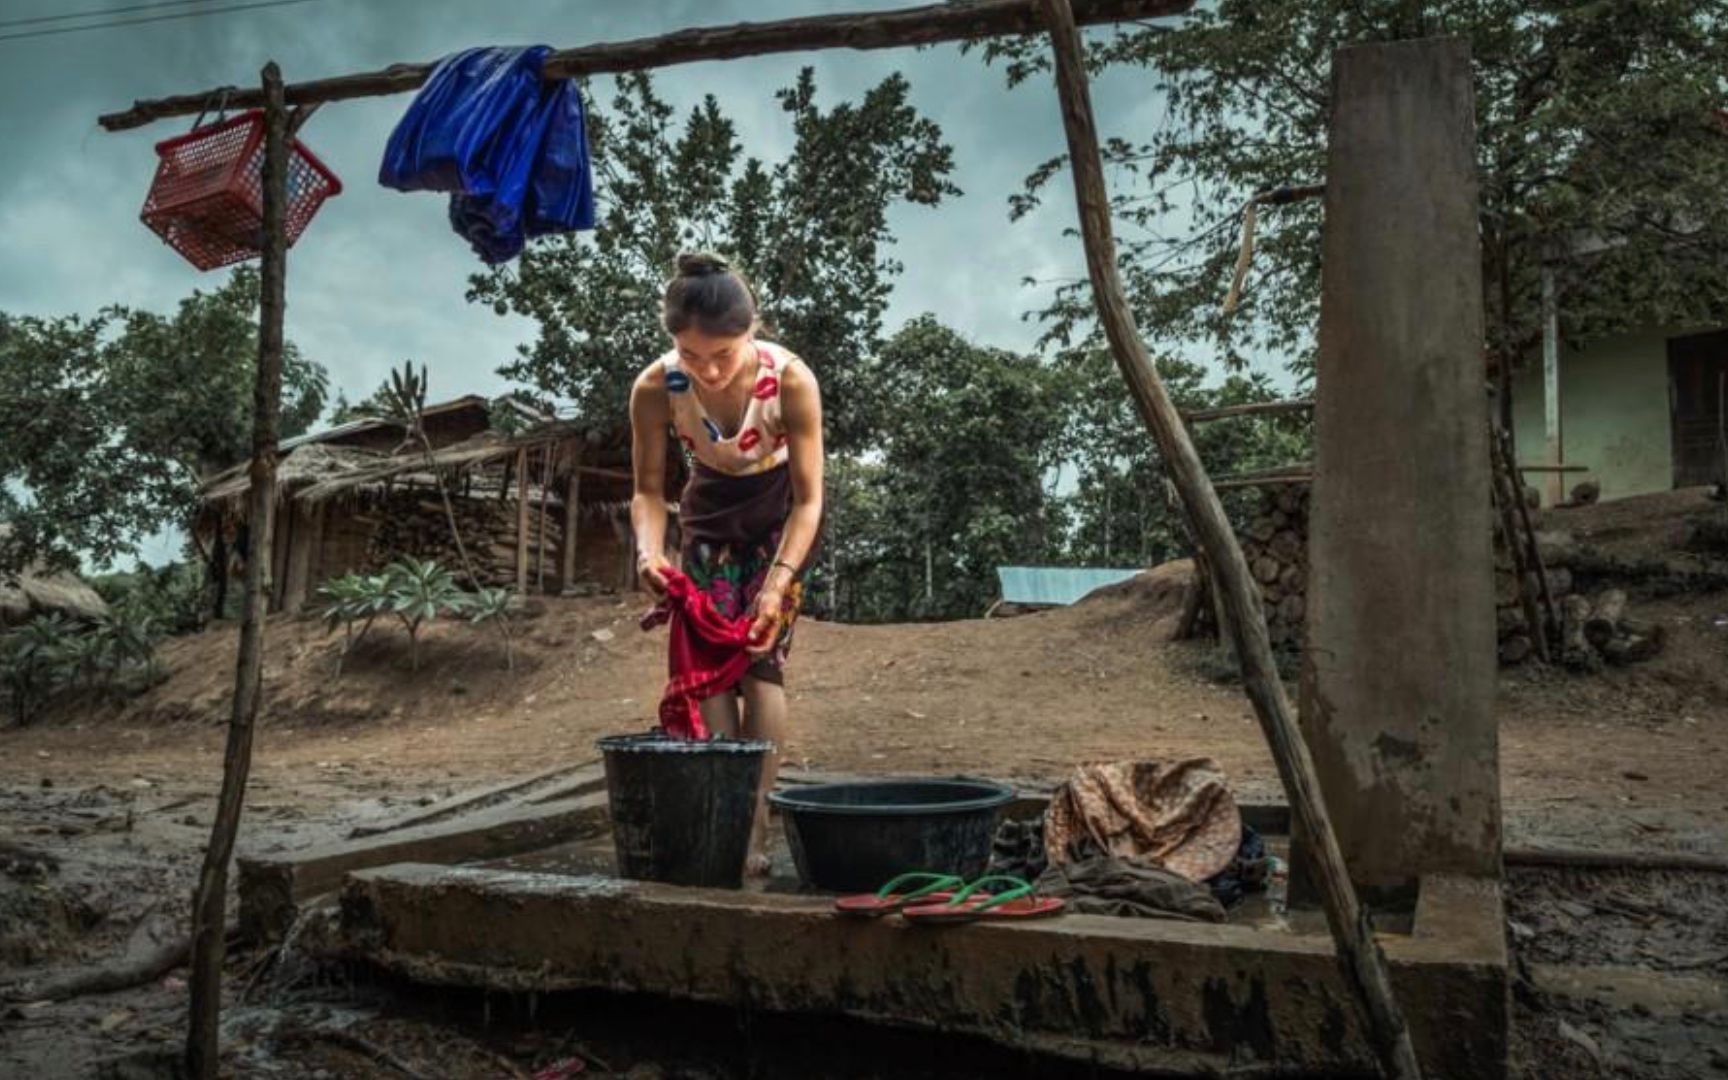 老挝阿卡族女人洗澡图片